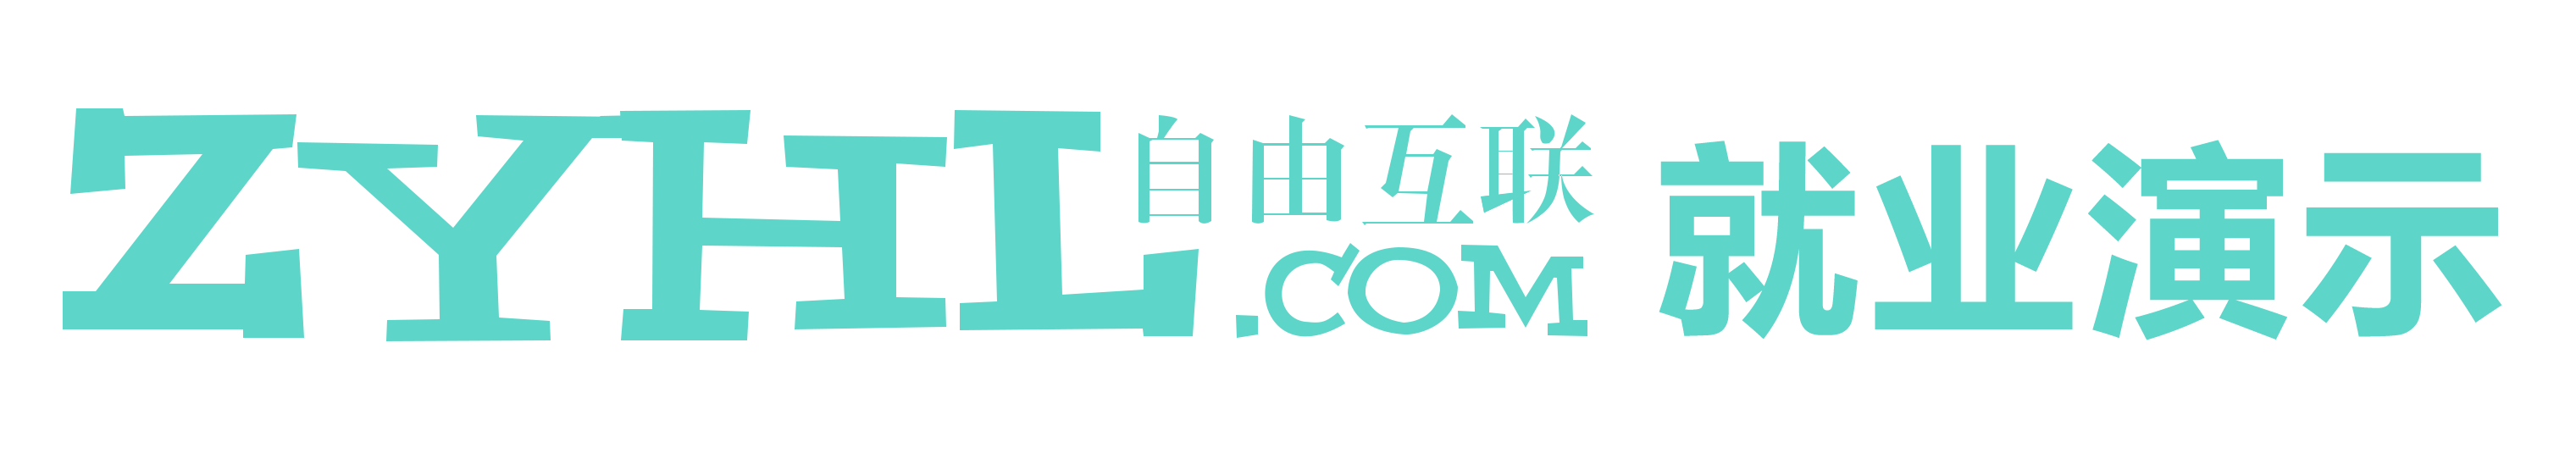 云南自由互联科技有限公司